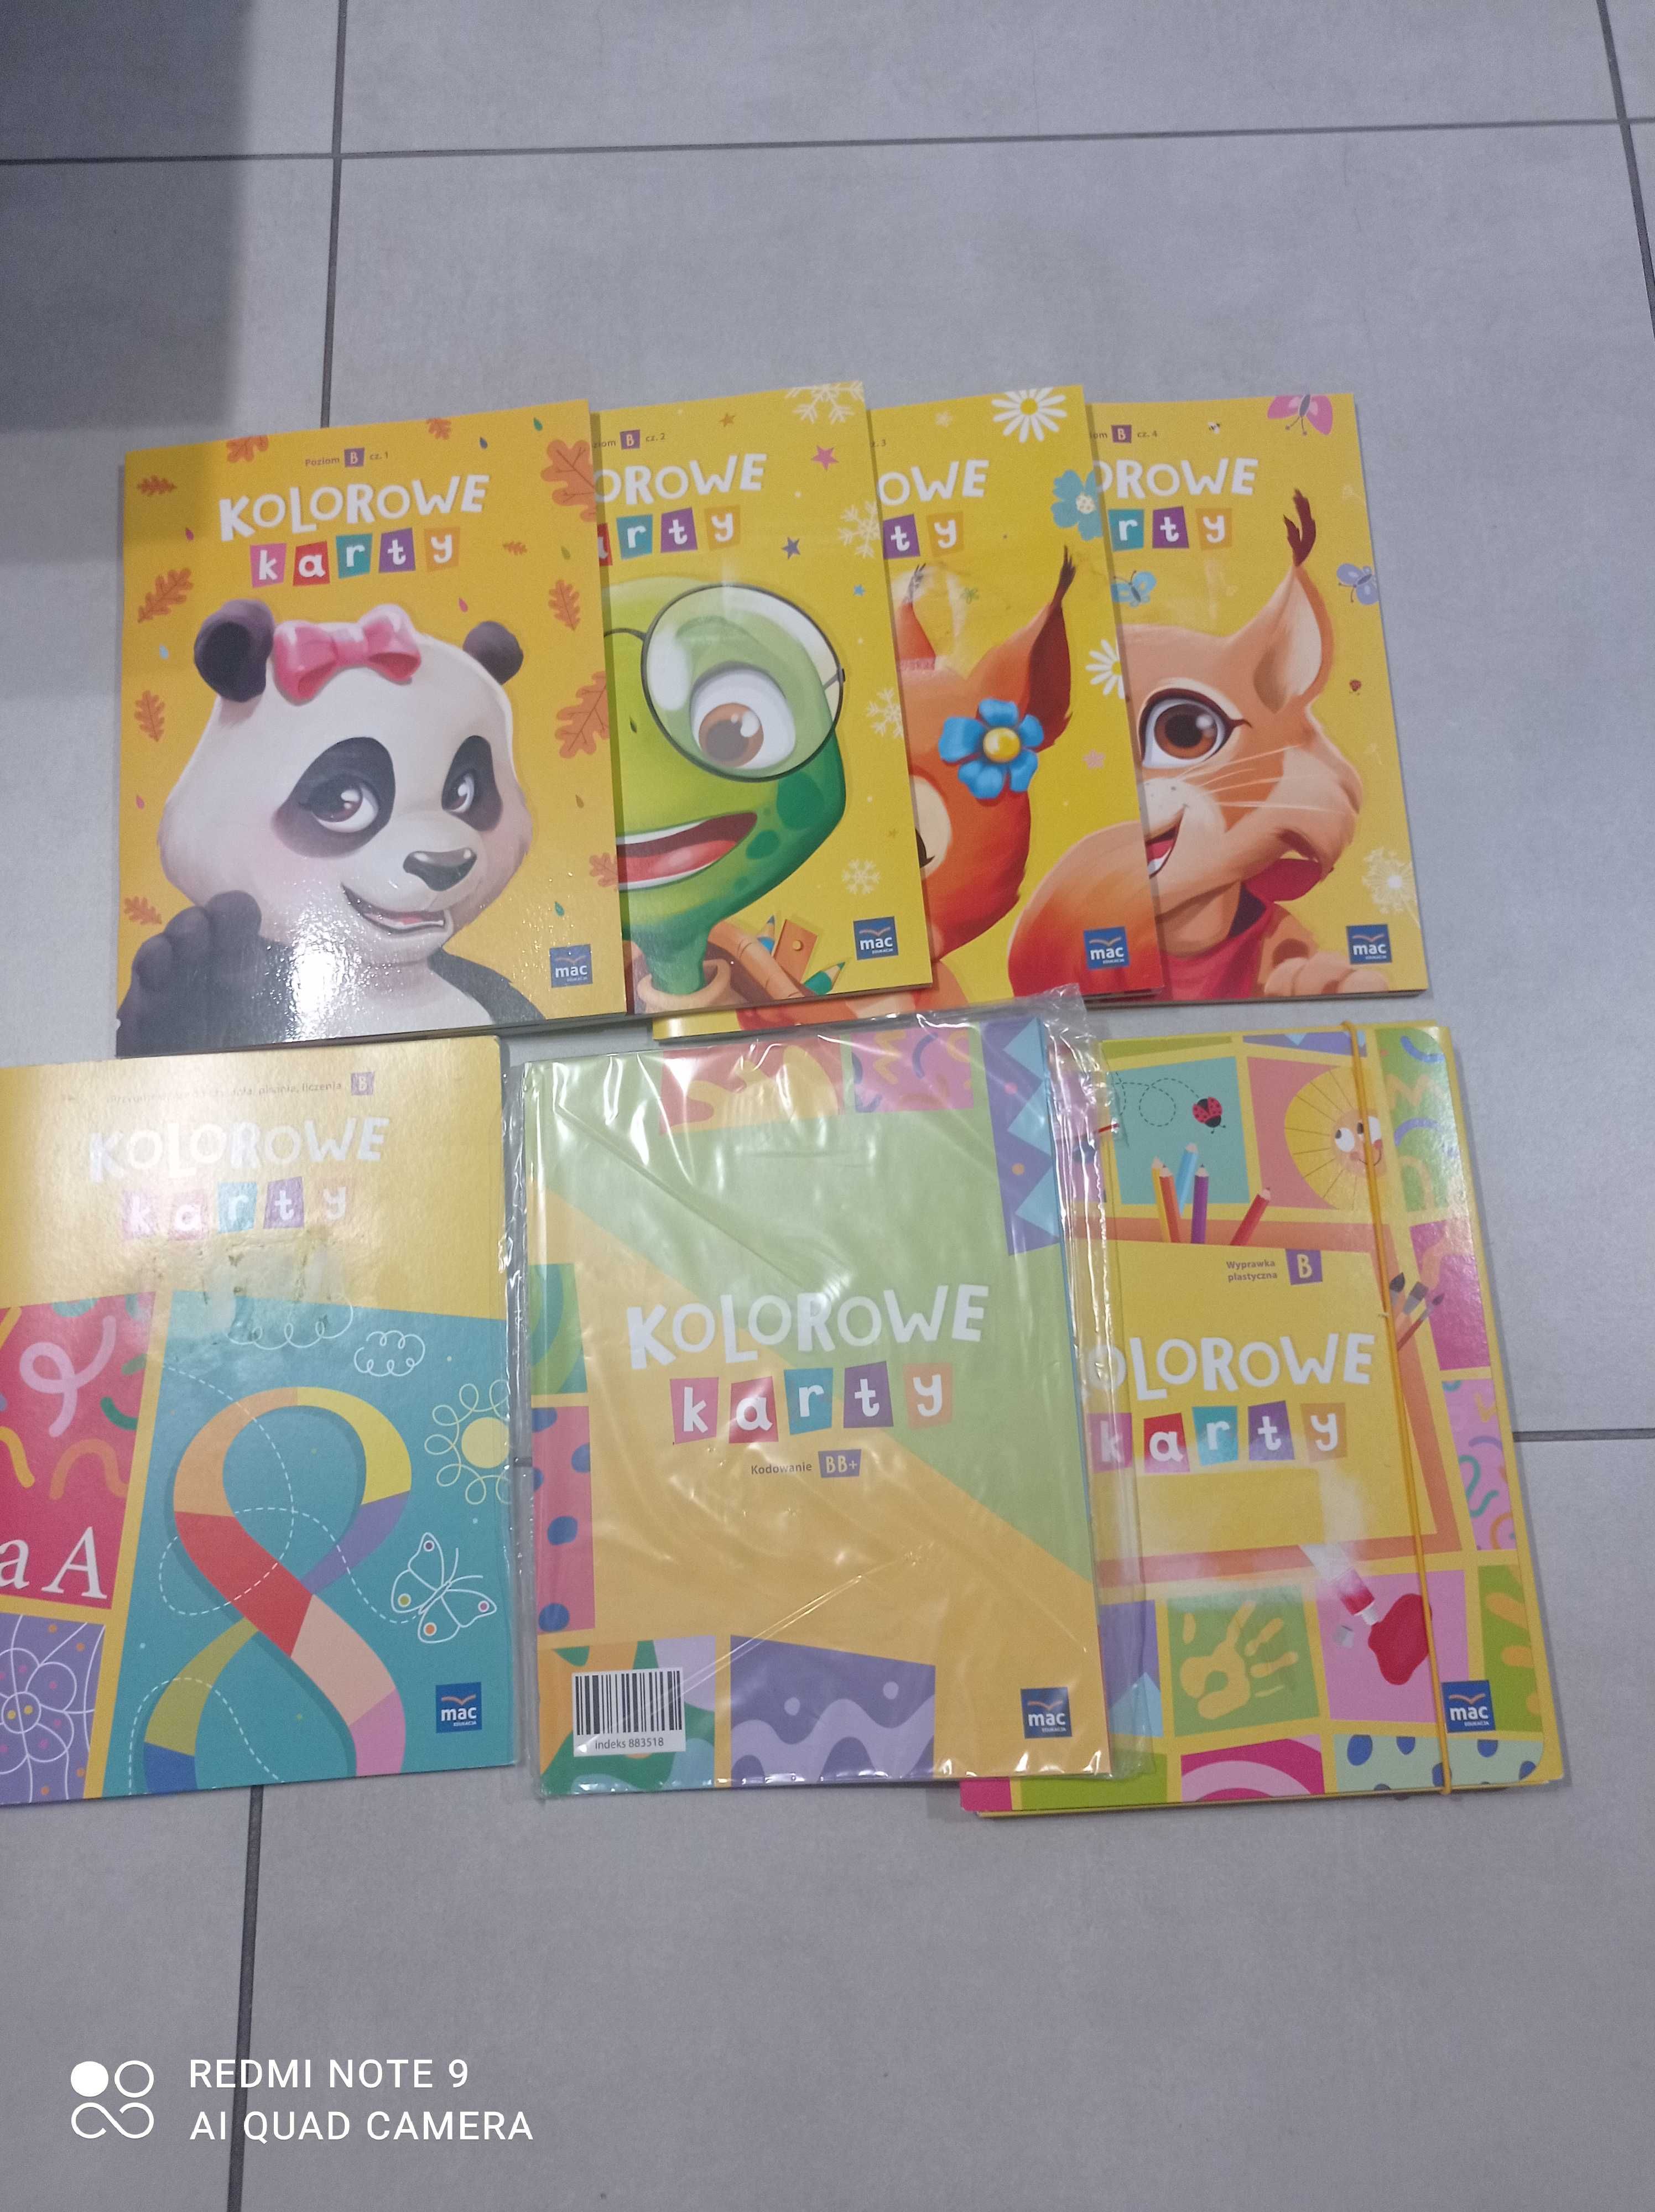 Kolorowe karty książki dla dzieci